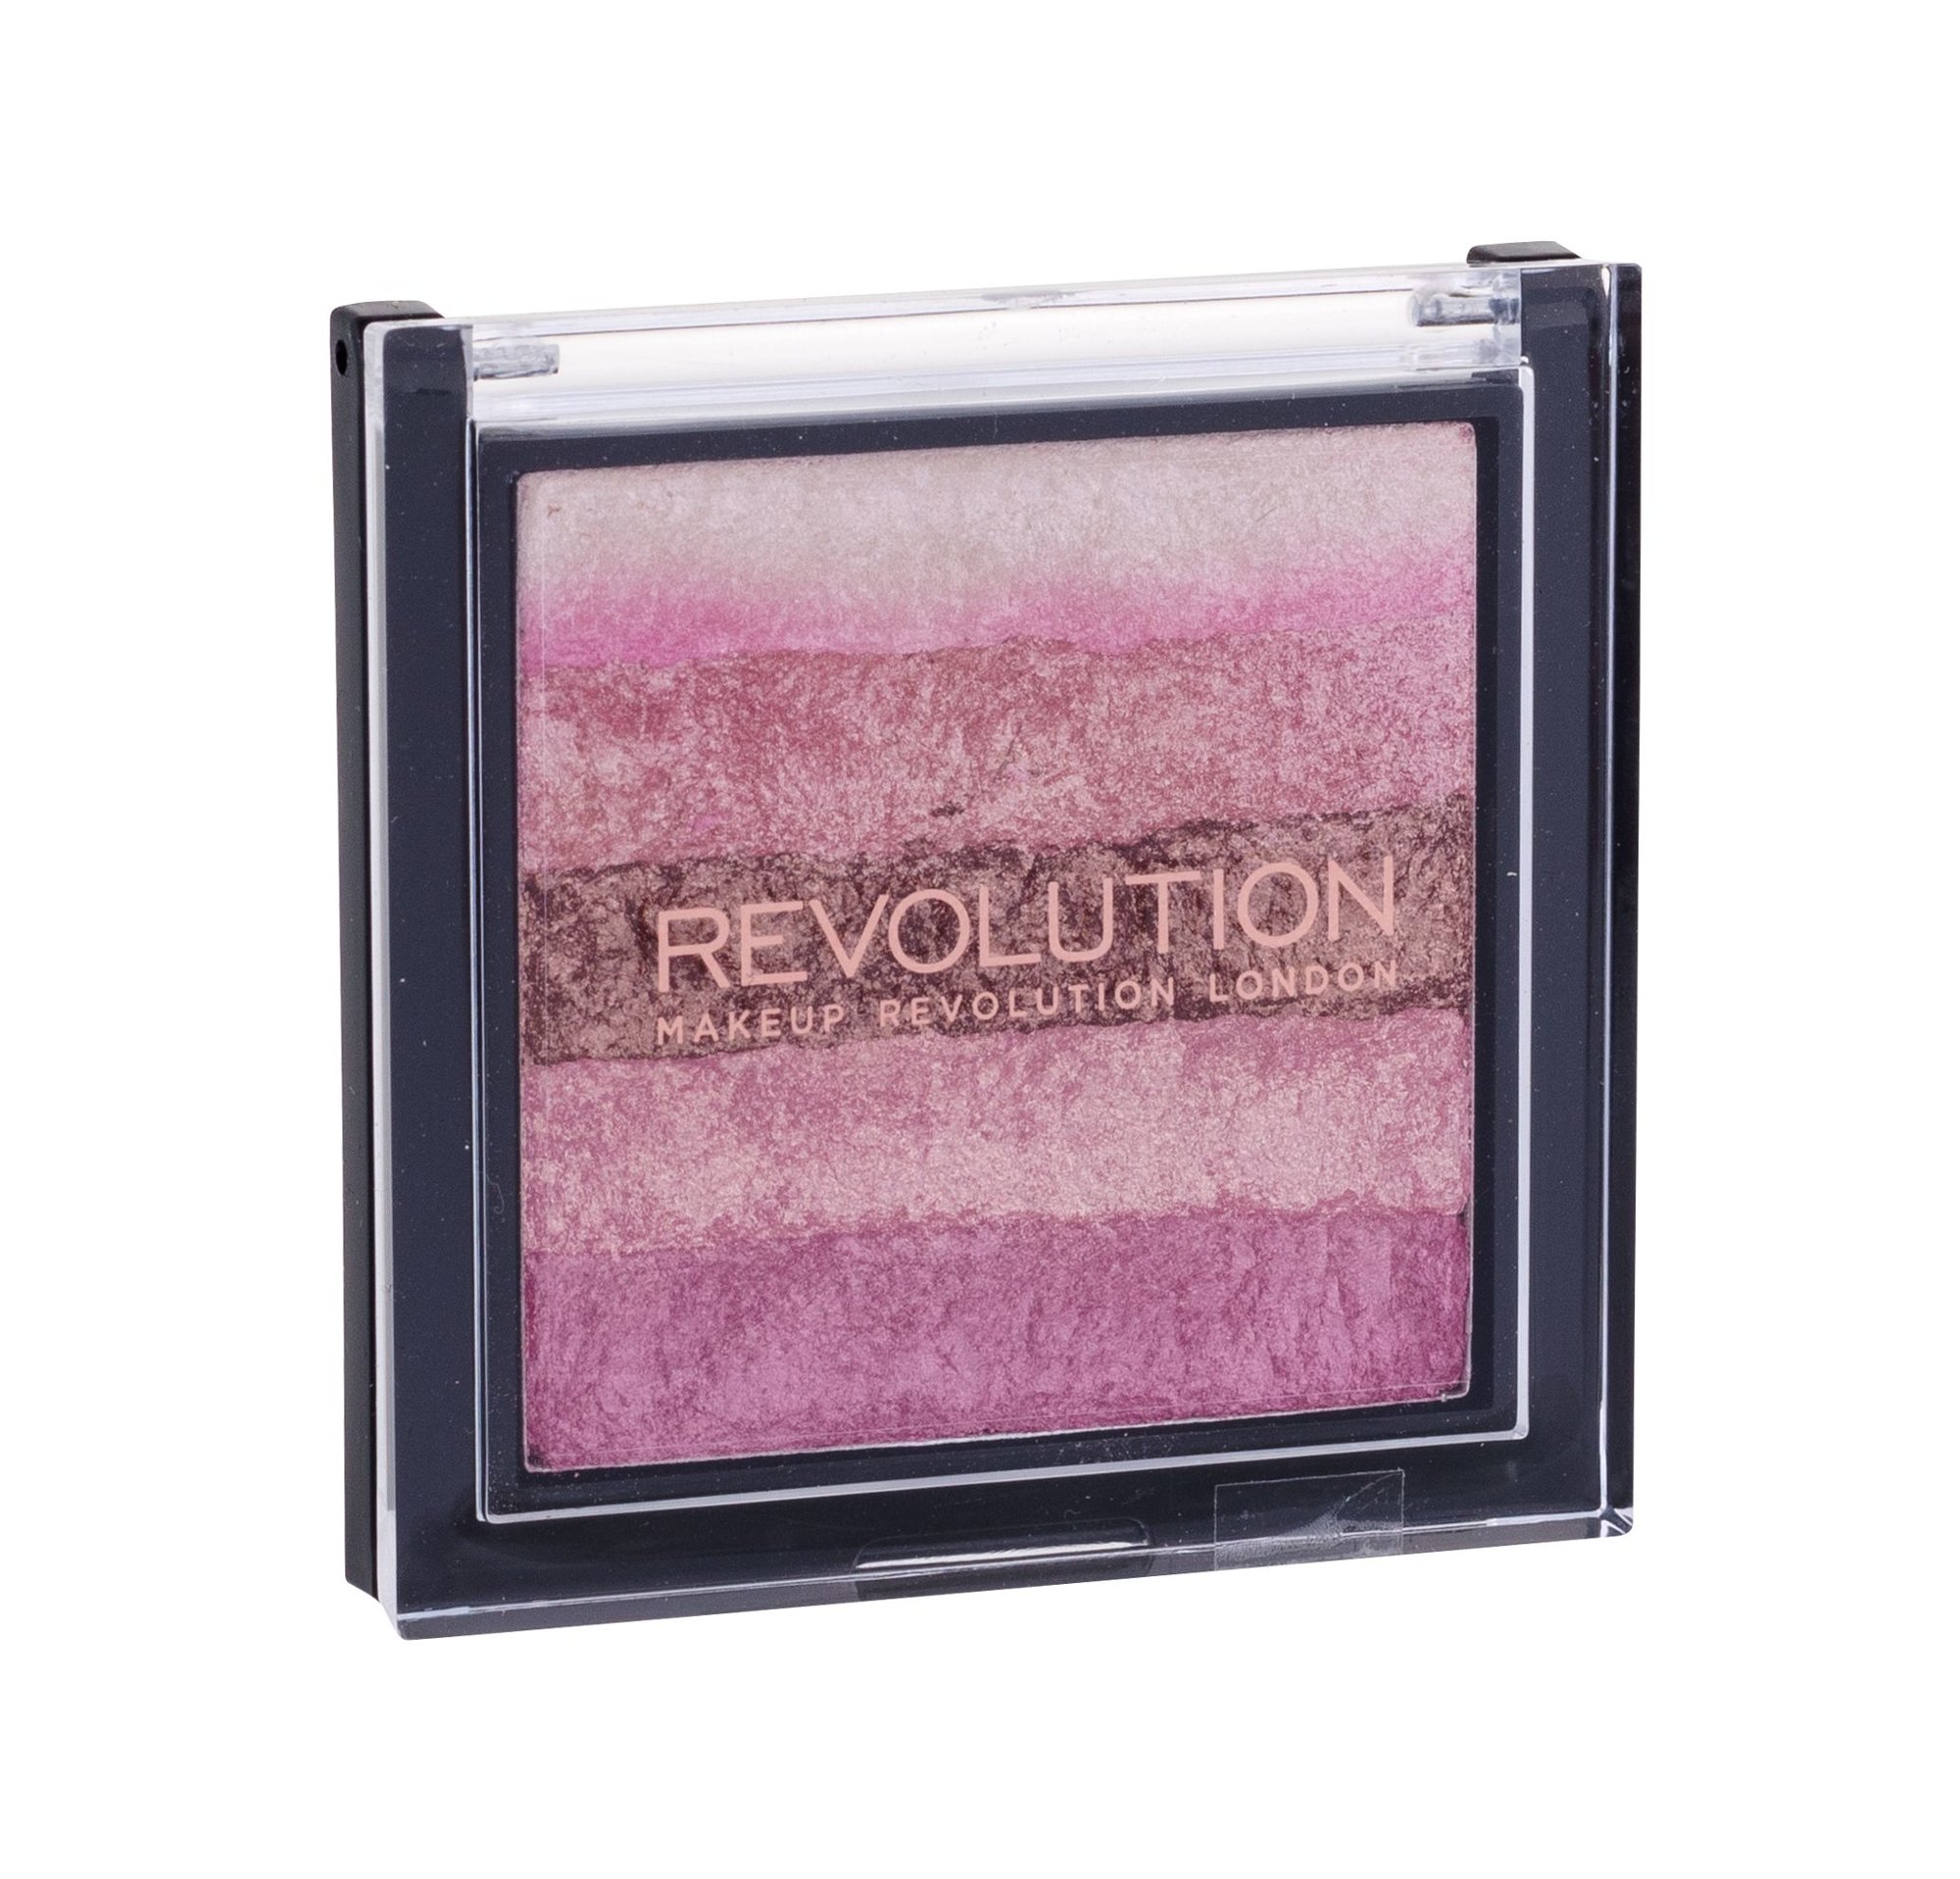 Makeup Revolution London Shimmer Brick 7g skaistalai